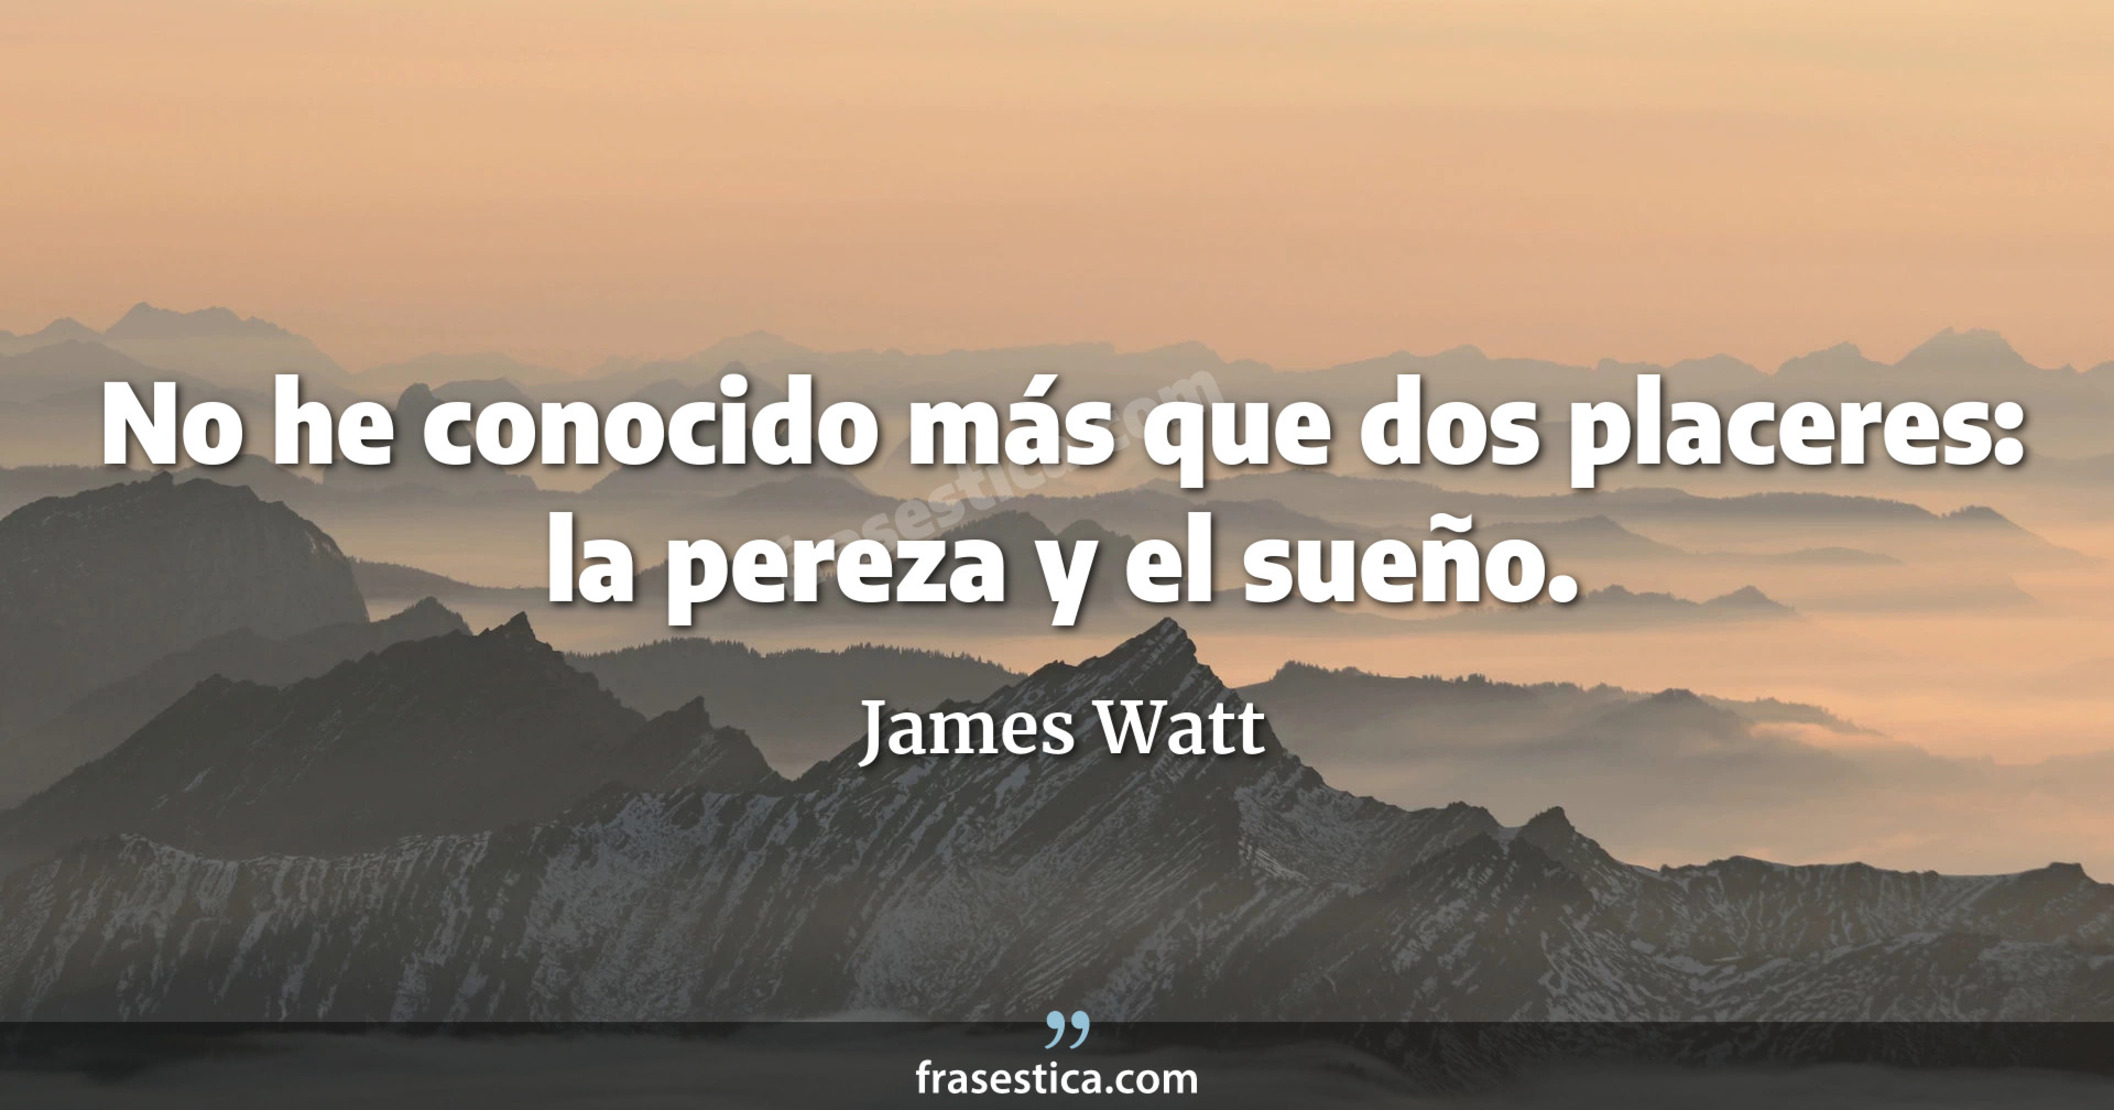 No he conocido más que dos placeres: la pereza y el sueño. - James Watt